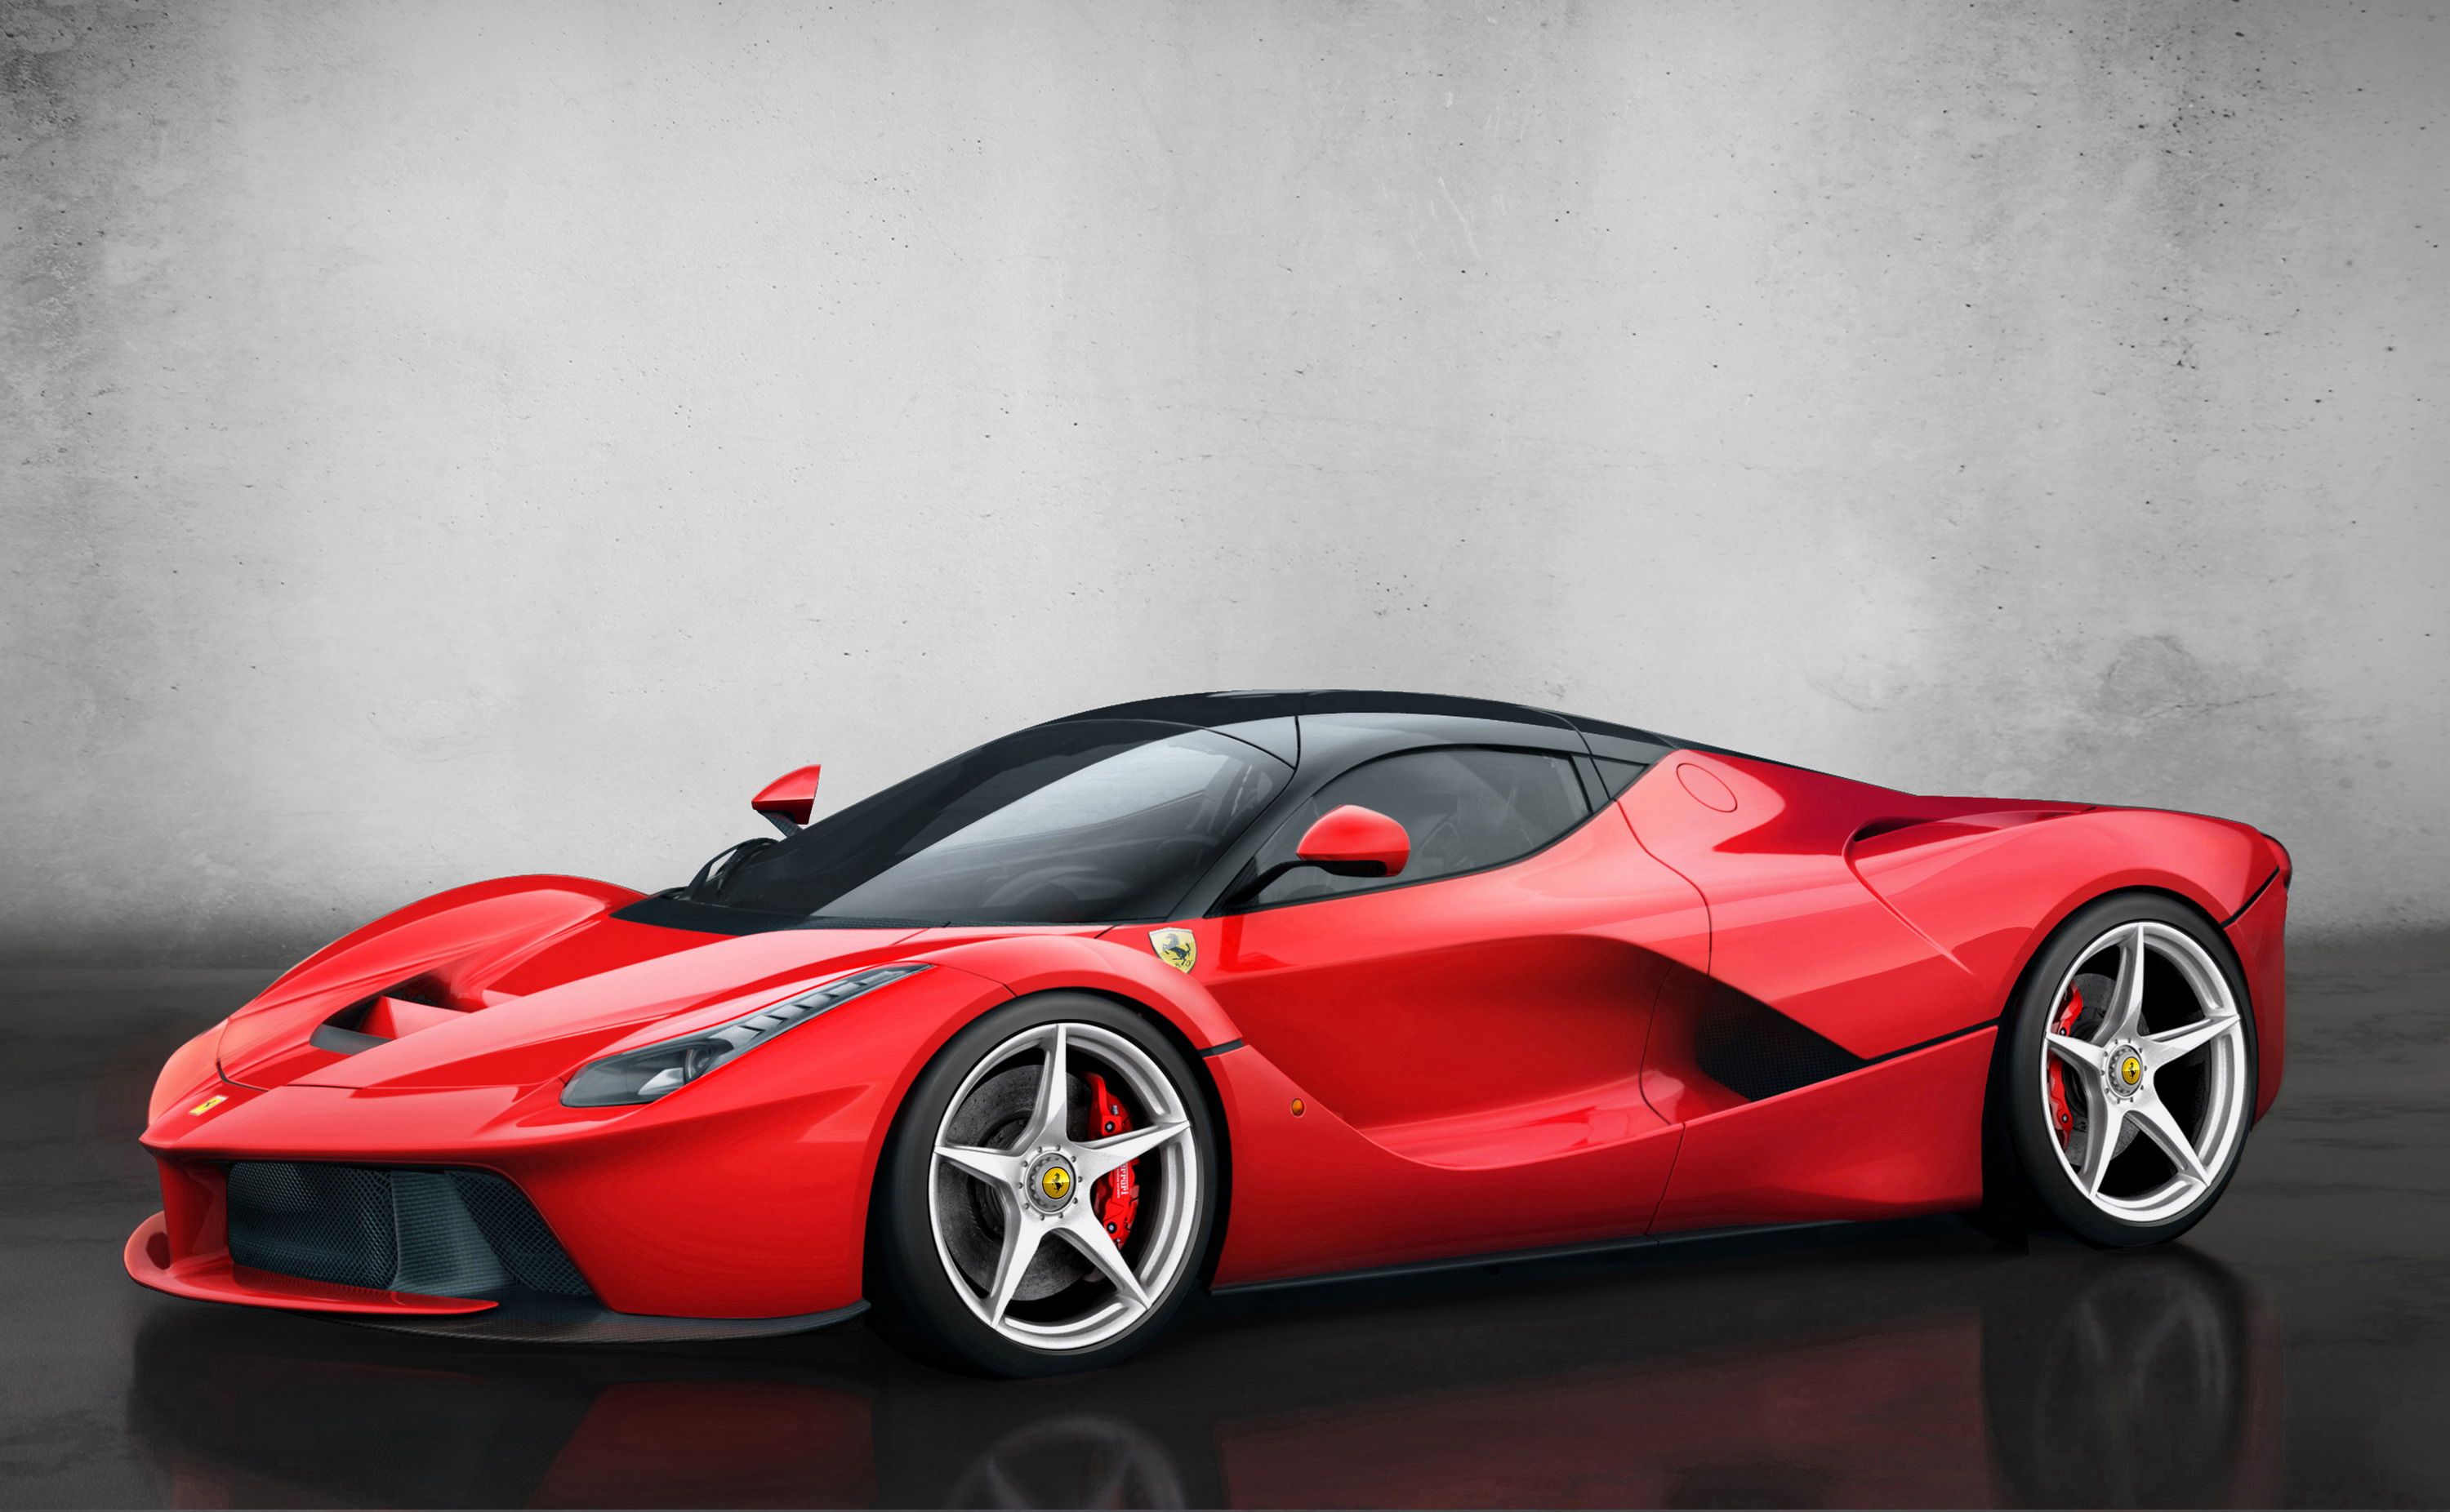 A red Ferrari LaFerrari